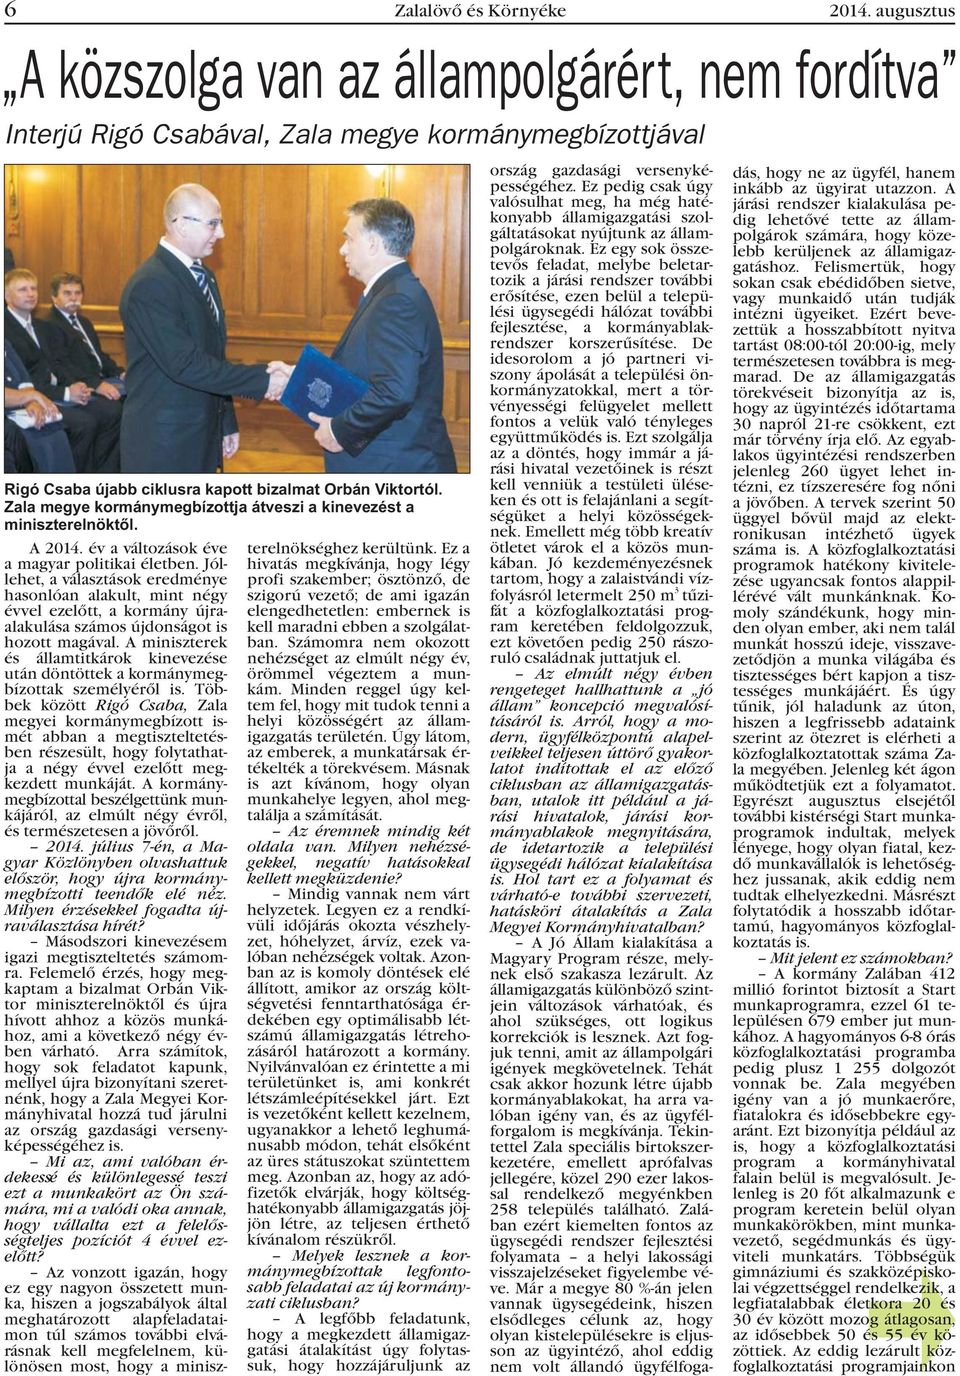 Zala megye kormánymegbízottja átveszi a kinevezést a miniszterelnöktõl. A 2014. év a változások éve a magyar politikai életben.